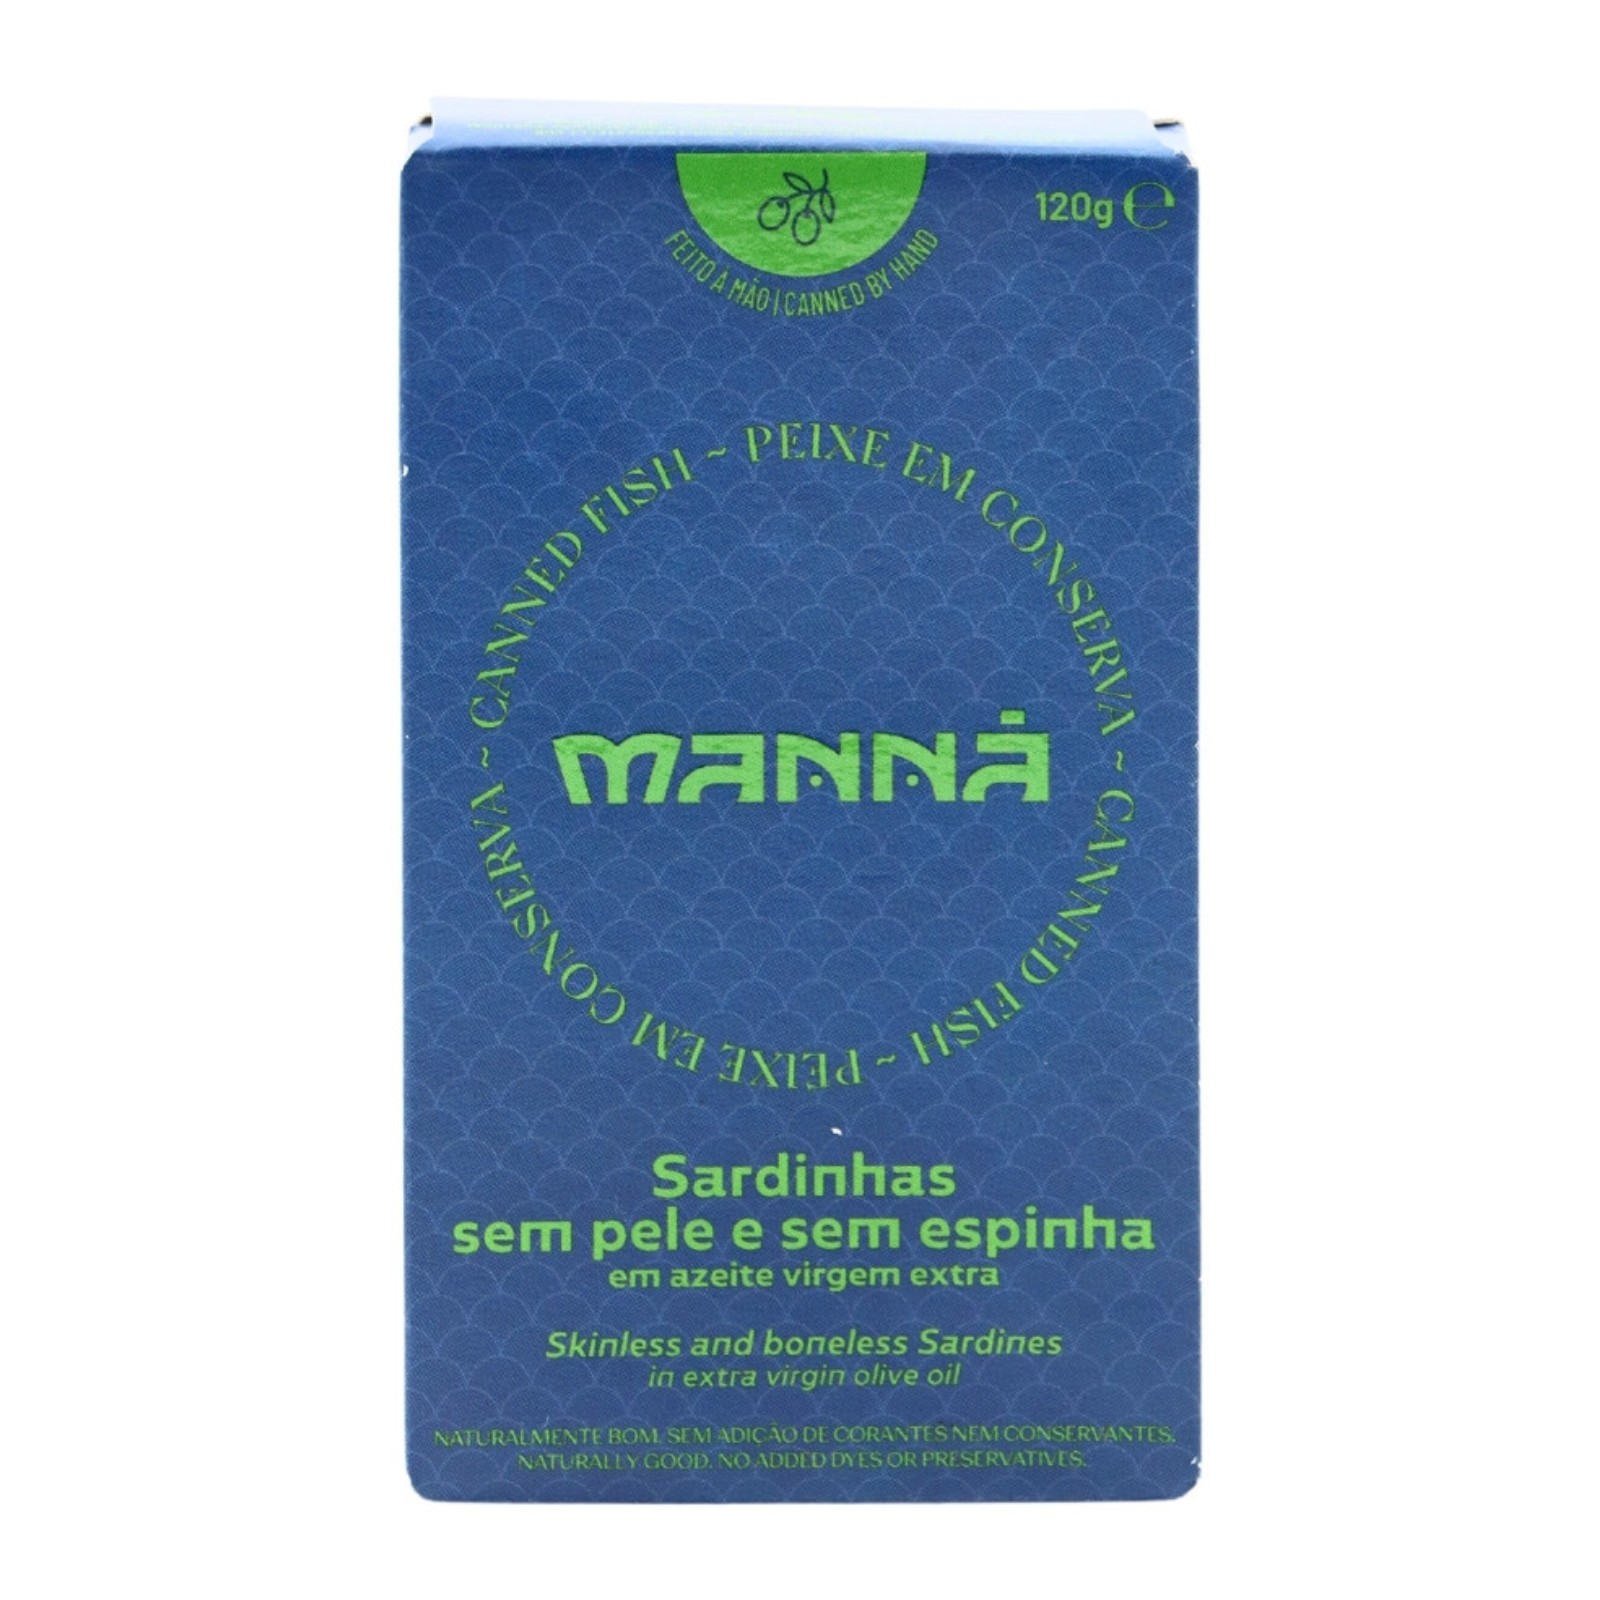 Manná Sardinen ohne Knochen und ohne Haut in nativem Olivenöl extra